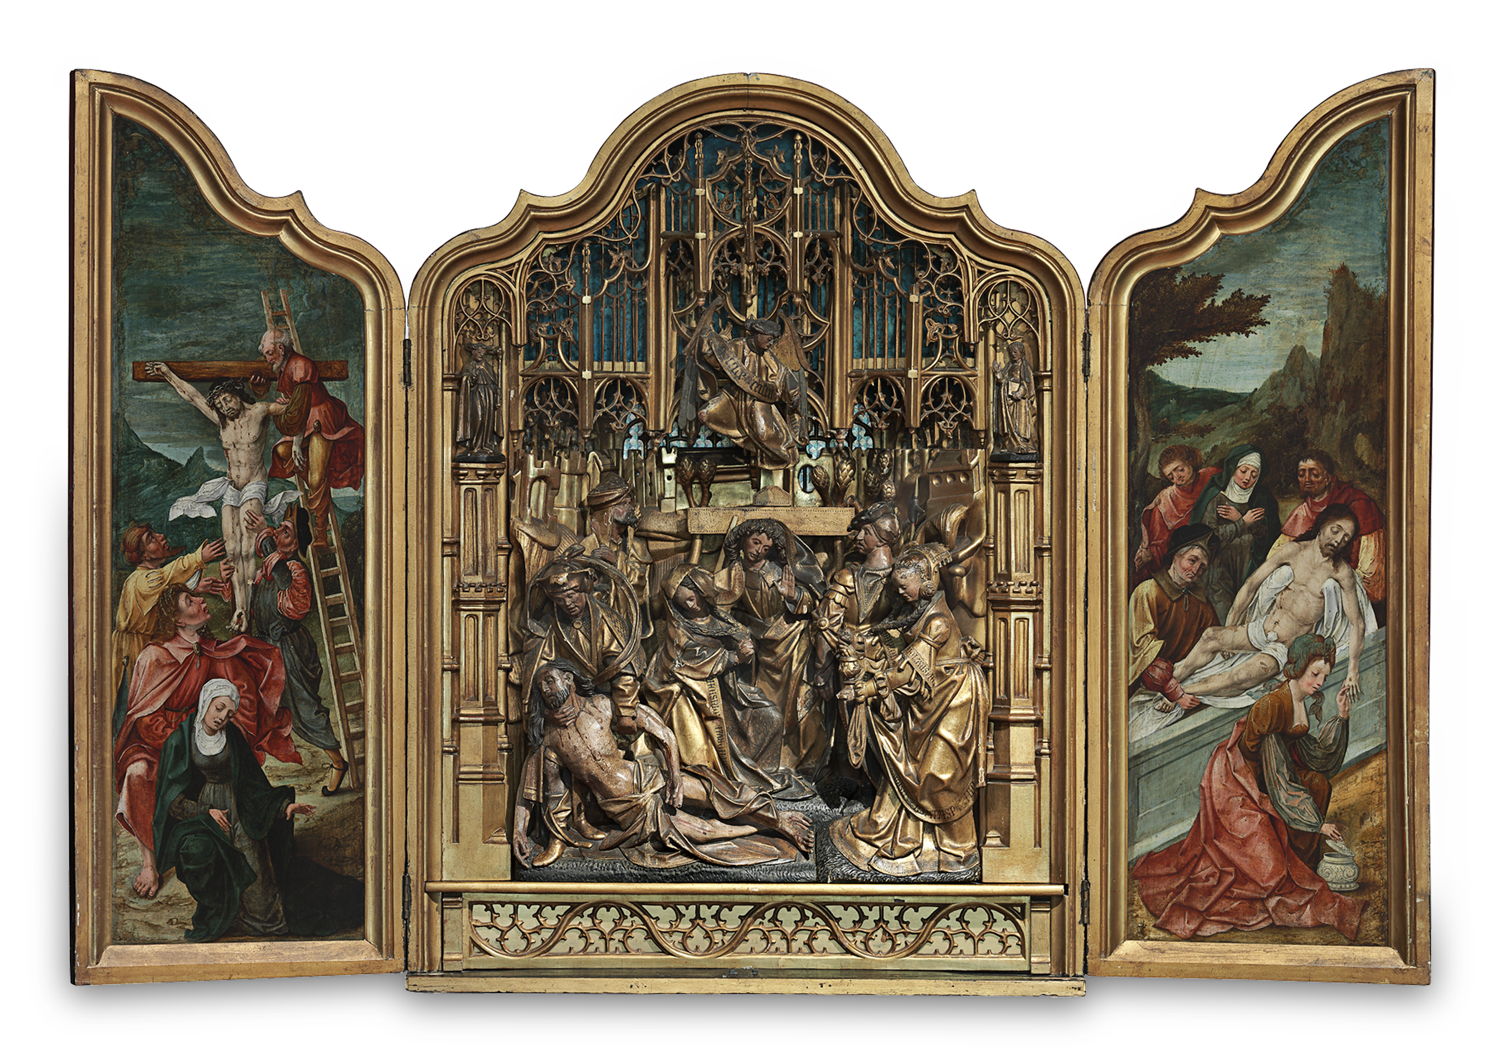 Antwerp Alterpiece, c. 1520, Collection Gaasbeek Castle